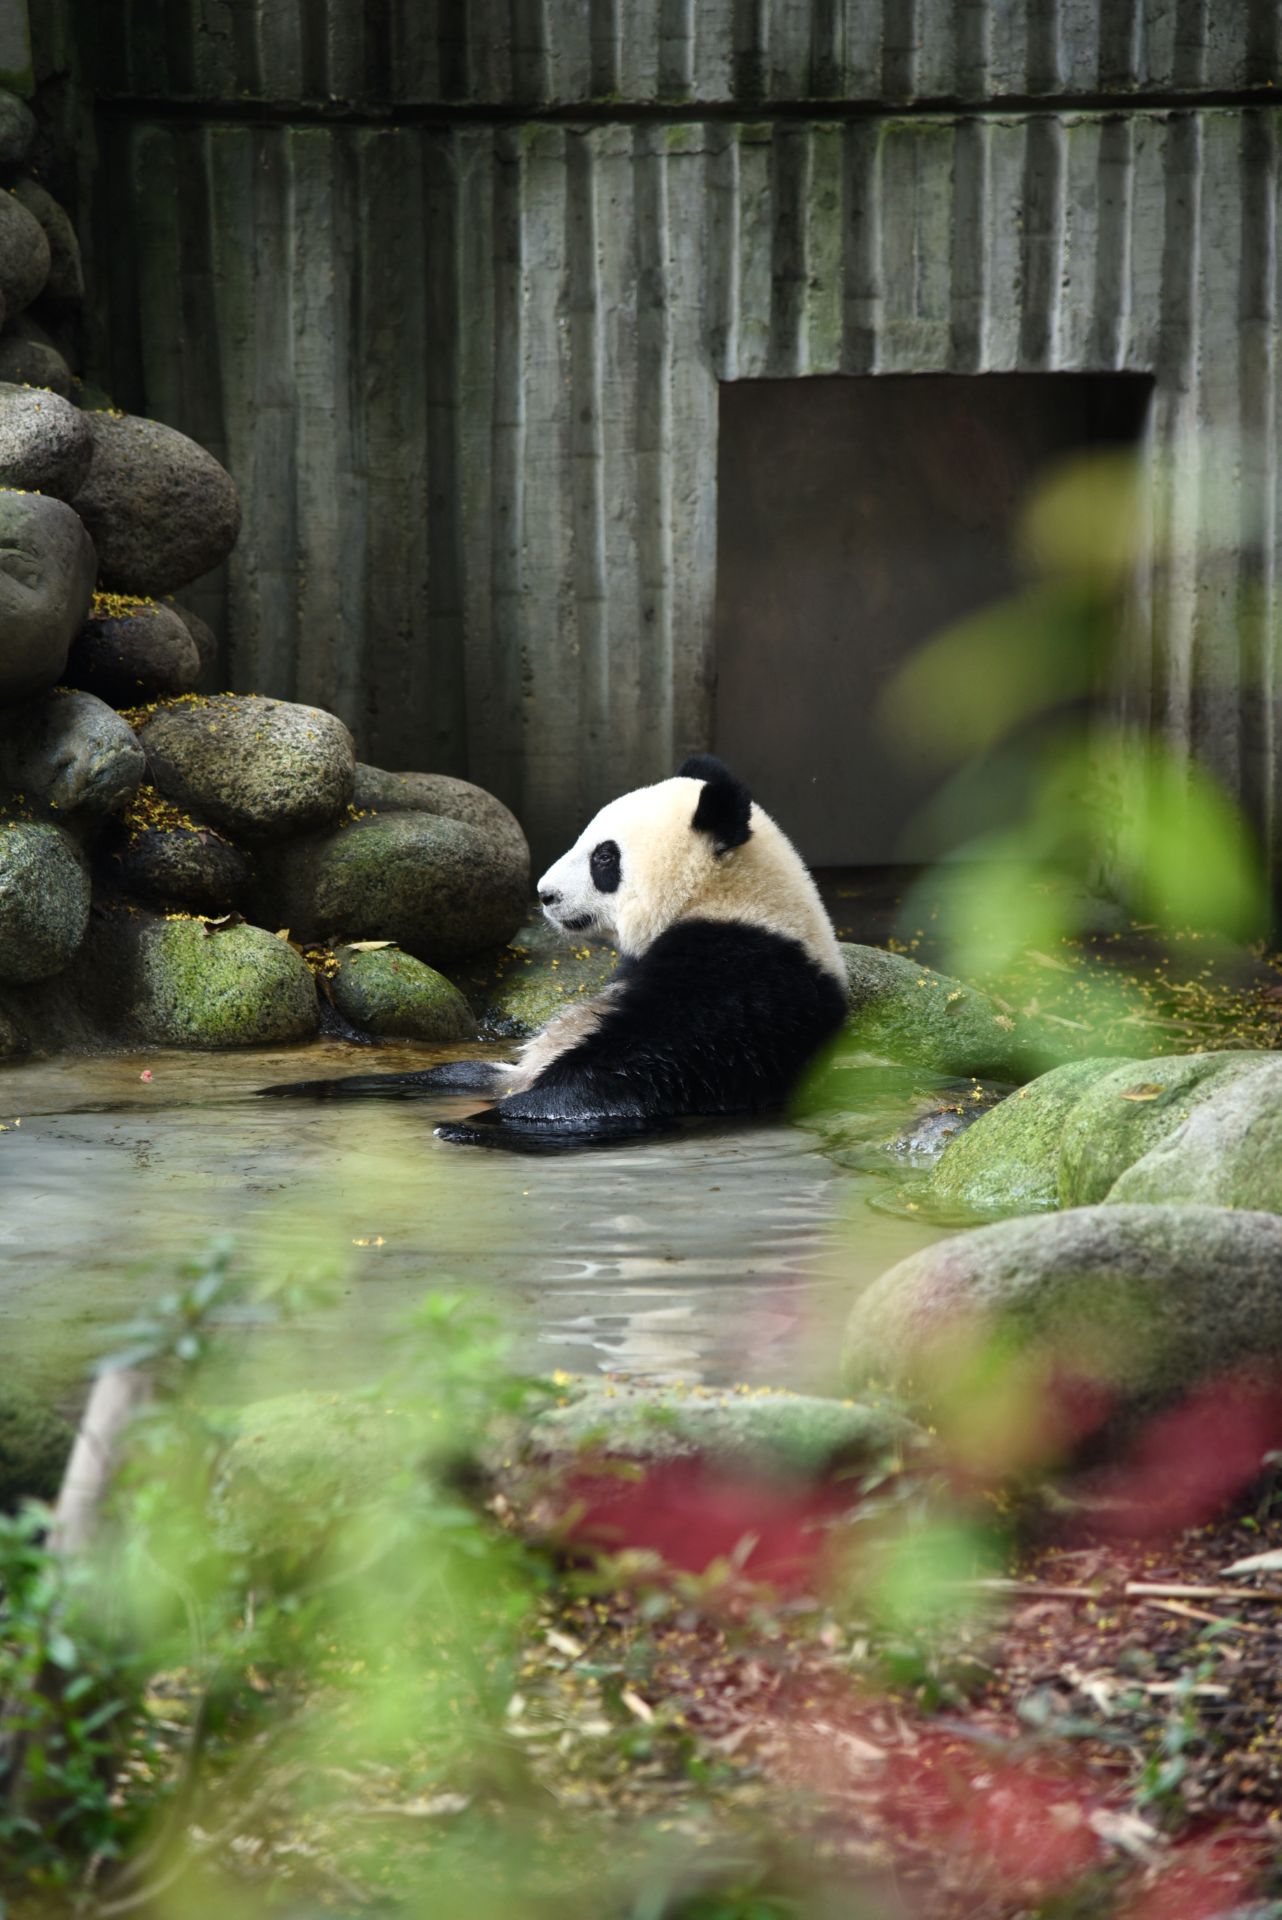 来到成都必须去看大熊猫，看着可爱的滚滚们，感觉就是一件特别幸福的事情，一天的时间很快就过去了，看熊猫